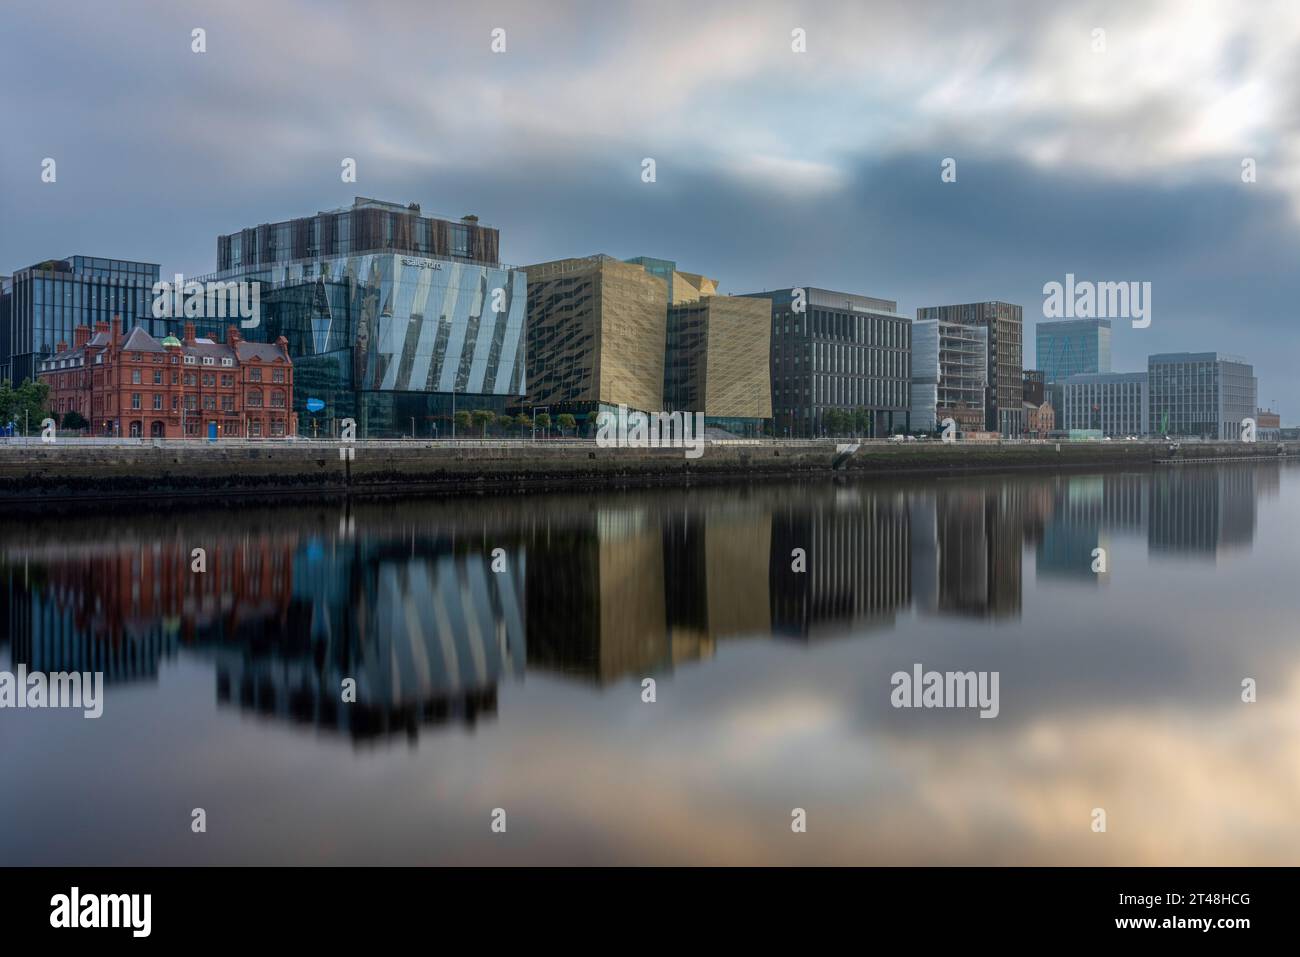 Dublin Docklands ist ein lebendiges und sich rasch entwickelndes Stadtgebiet mit moderner Architektur und innovativen Unternehmen. Stockfoto